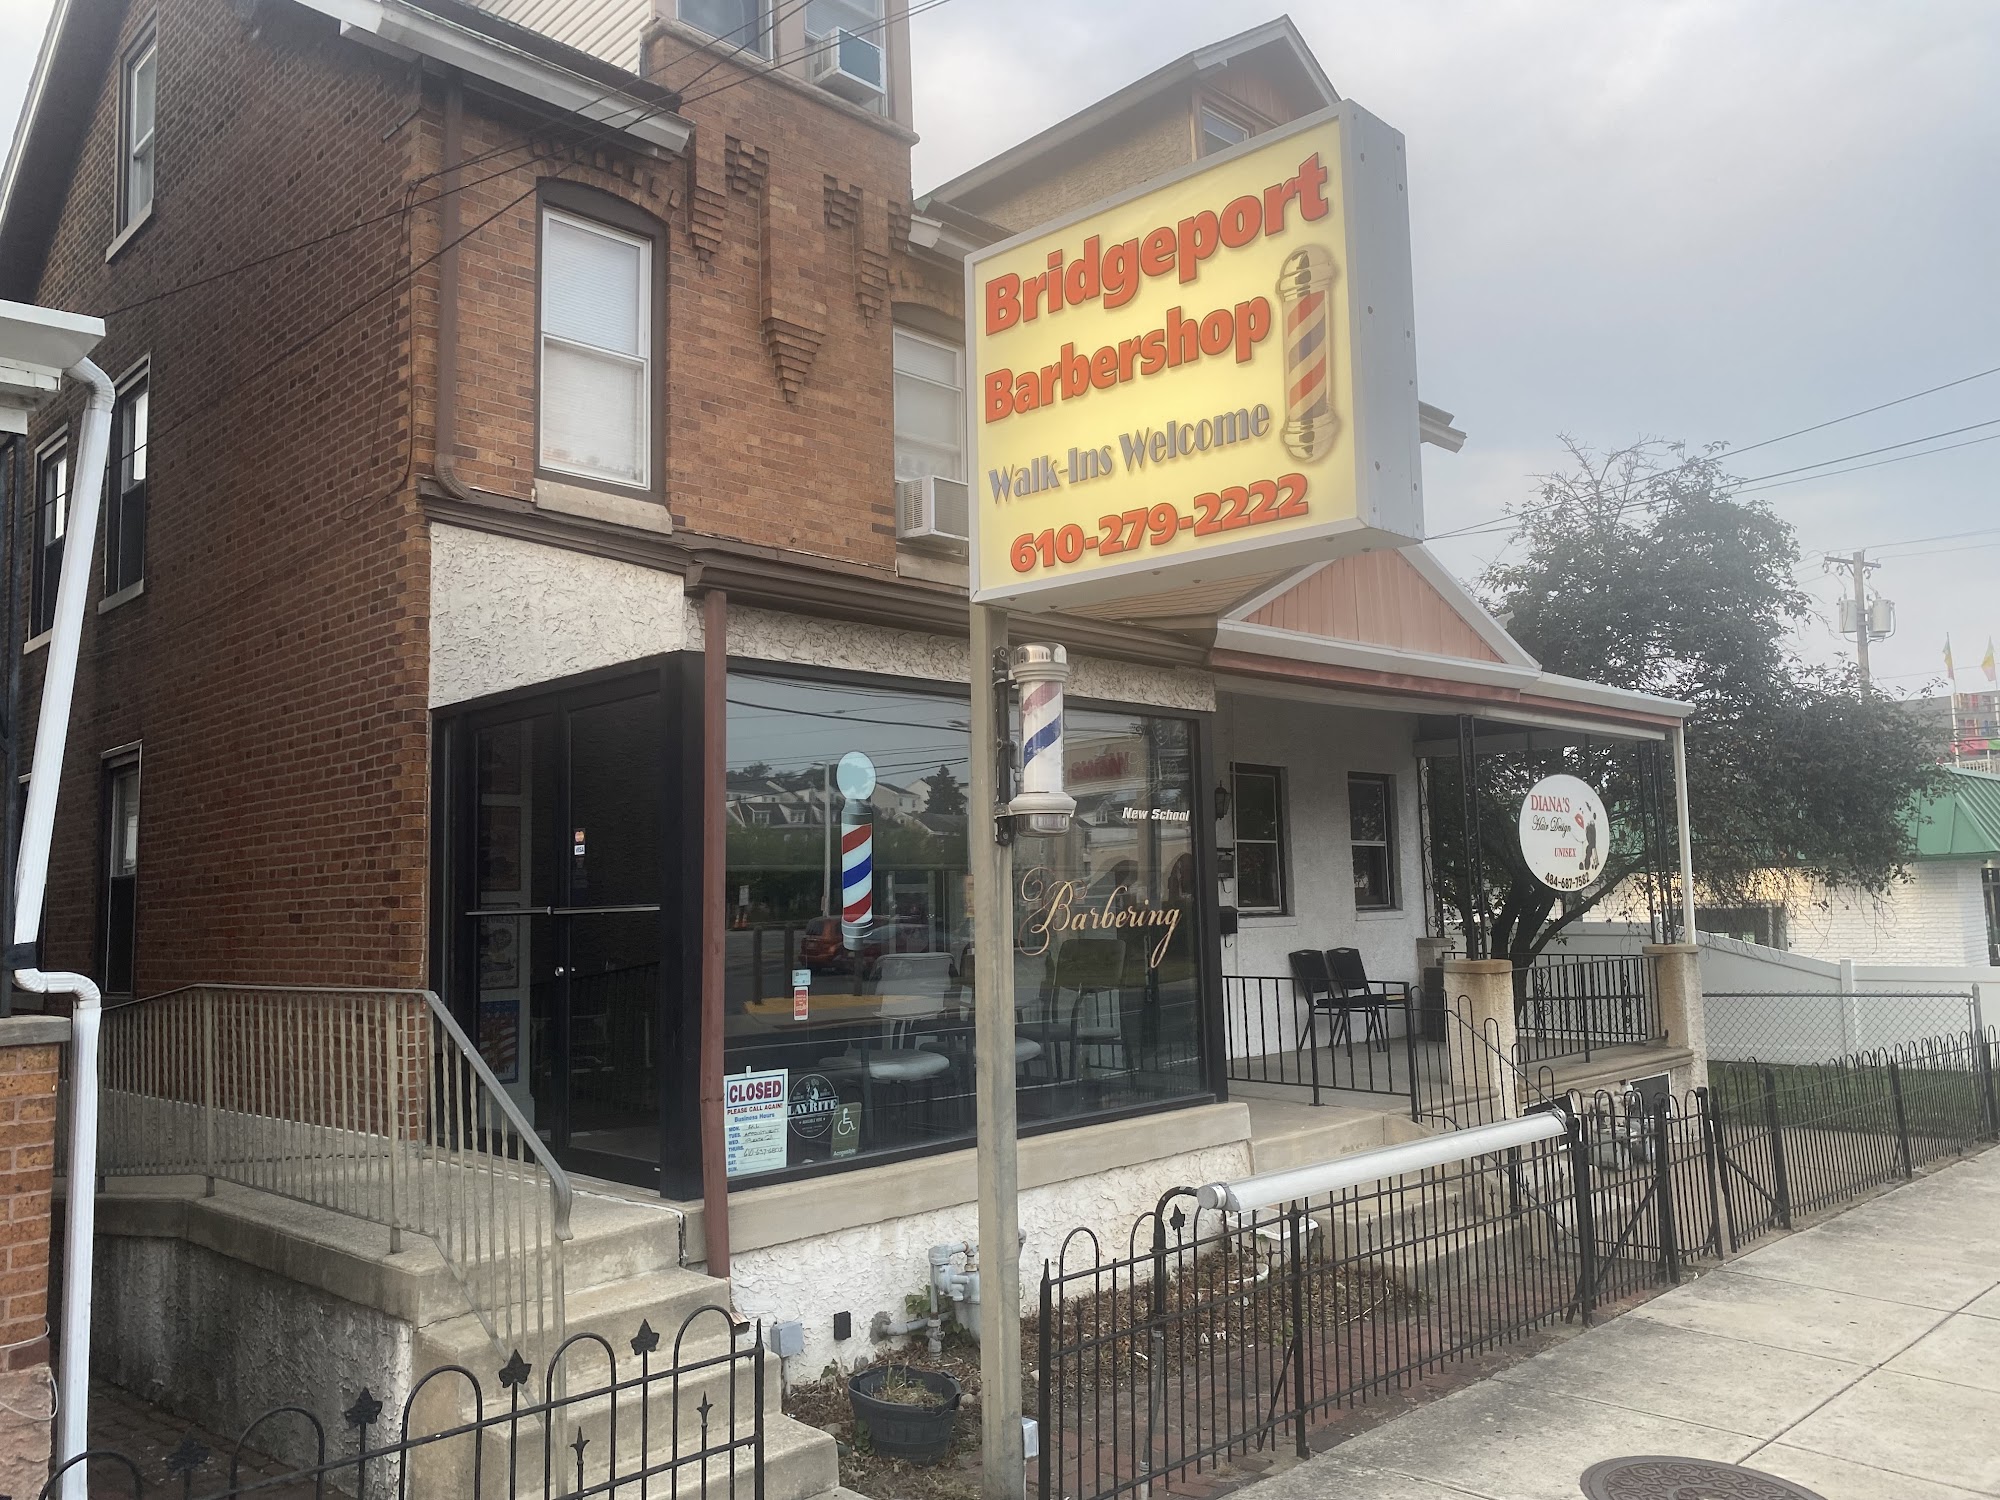 Bridgeport Barbershop